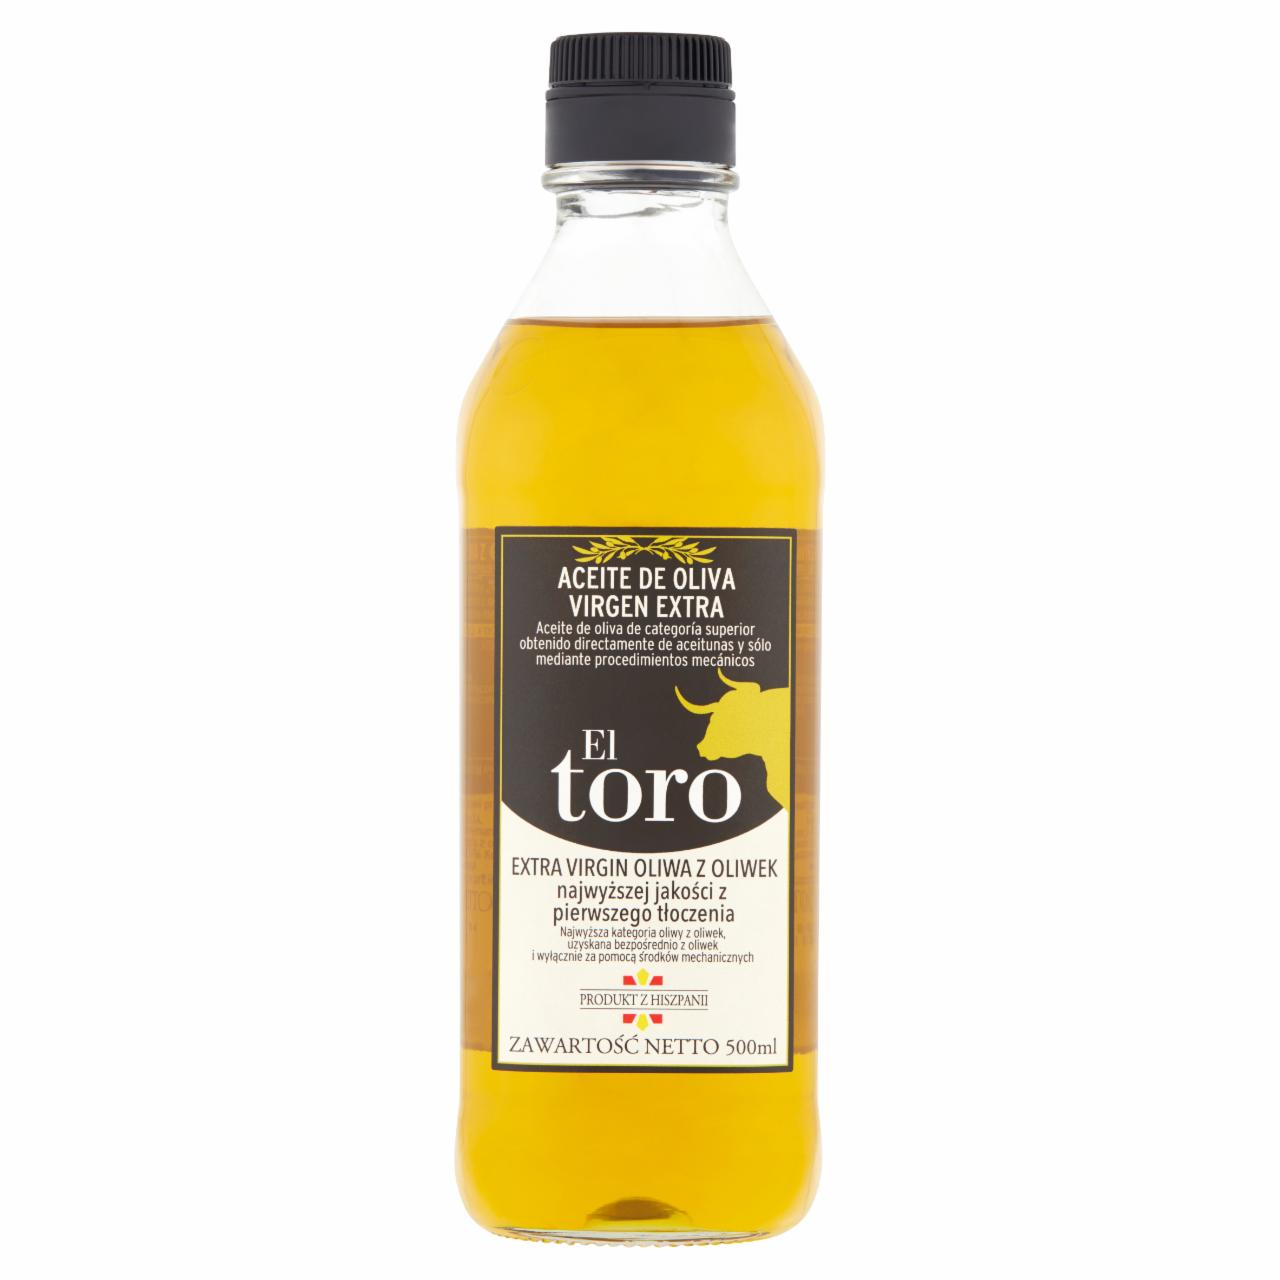 Zdjęcia - EL Toro Extra Virgin Oliwa z oliwek najwyższej jakości z pierwszego tłoczenia 500 ml